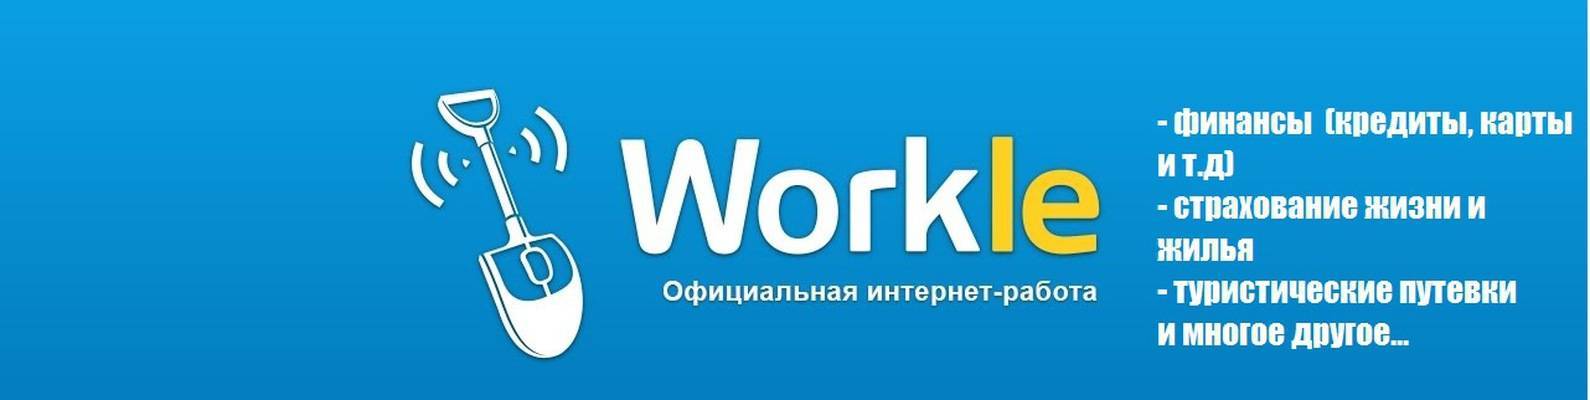 Вся правда о сервисе «workle.ru» — популярной бирже для фрилансеров